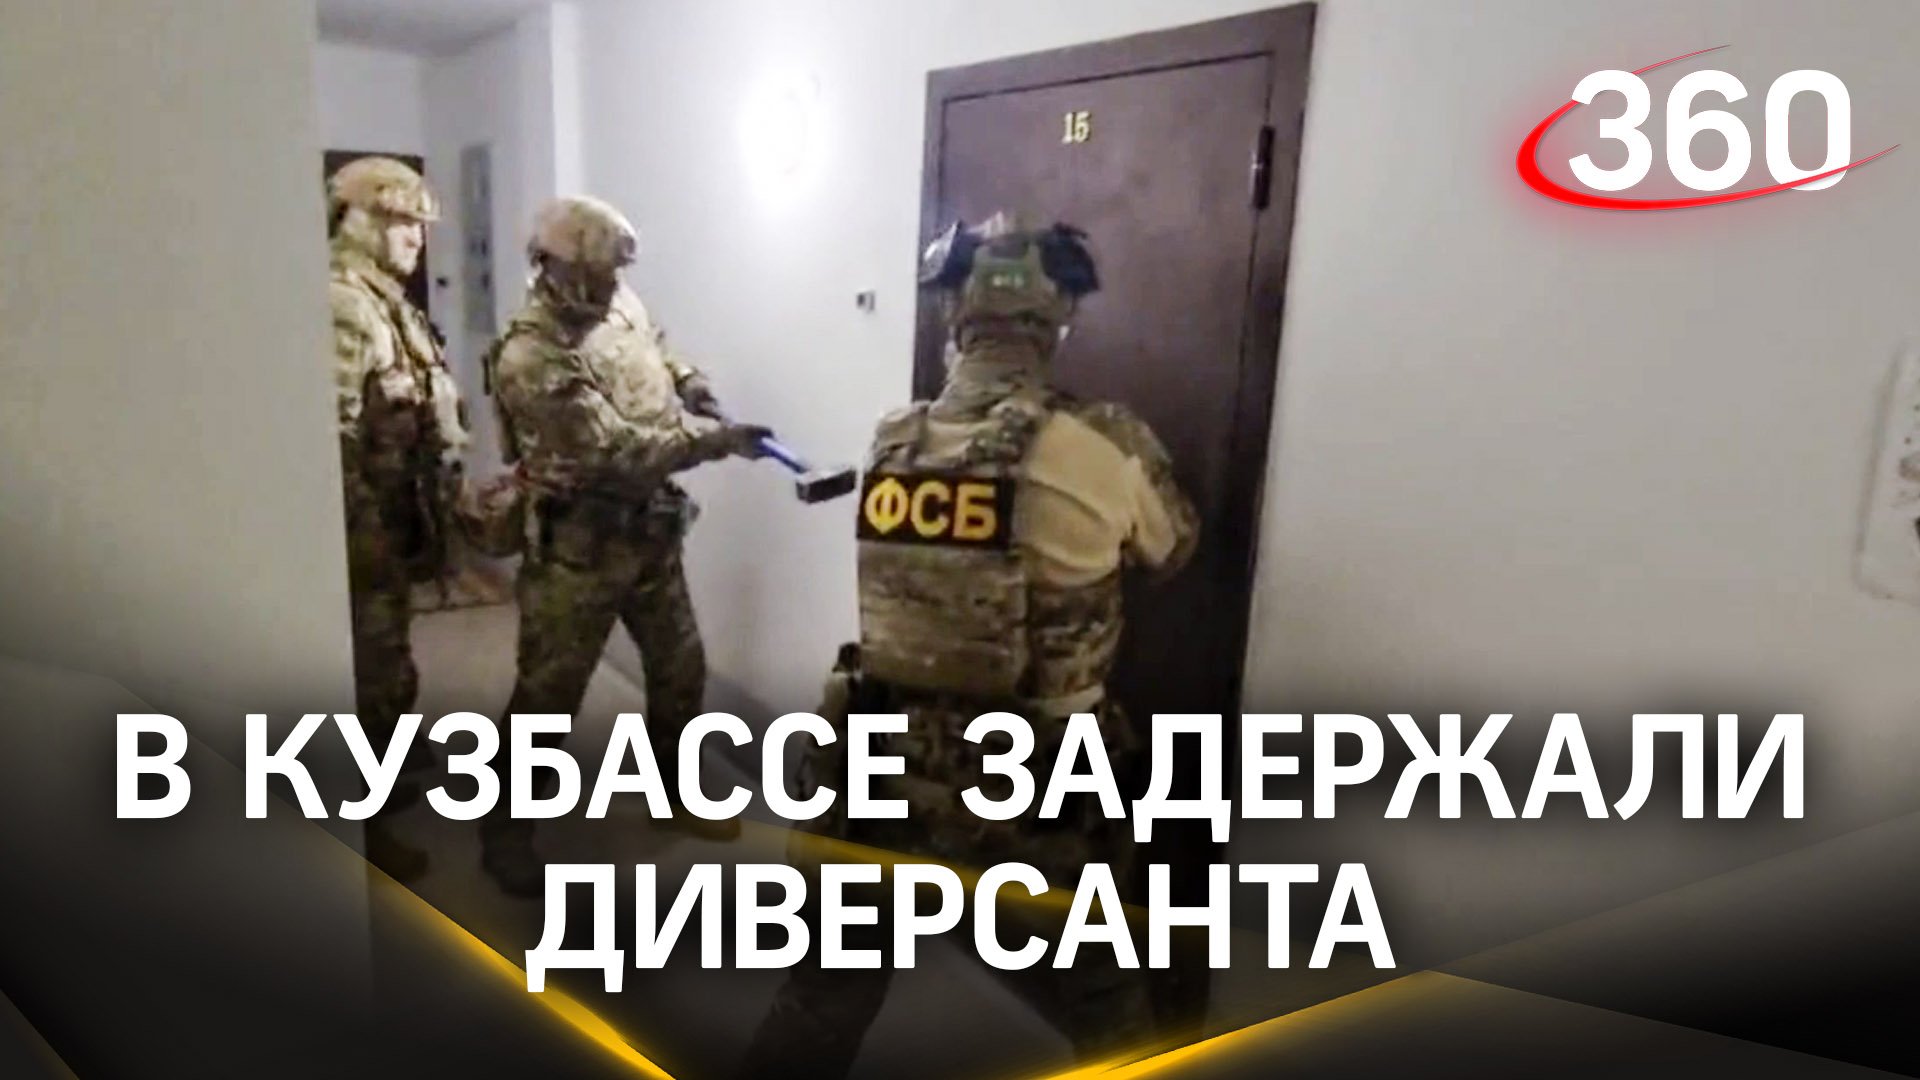 Задержание диверсанта на Кузбассе: оперативное видео